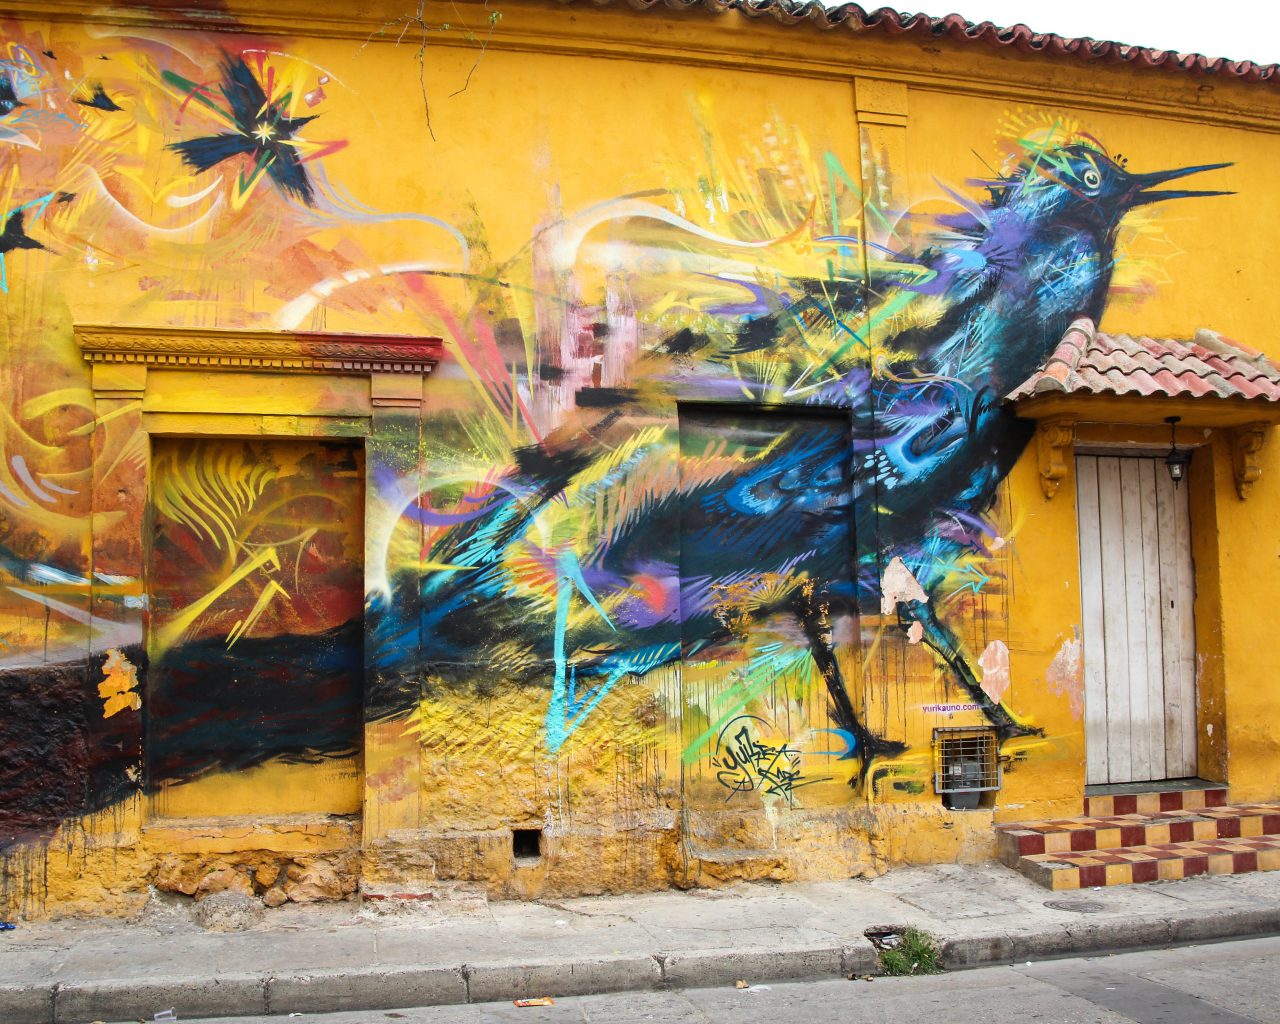 Cartagena-Colombia